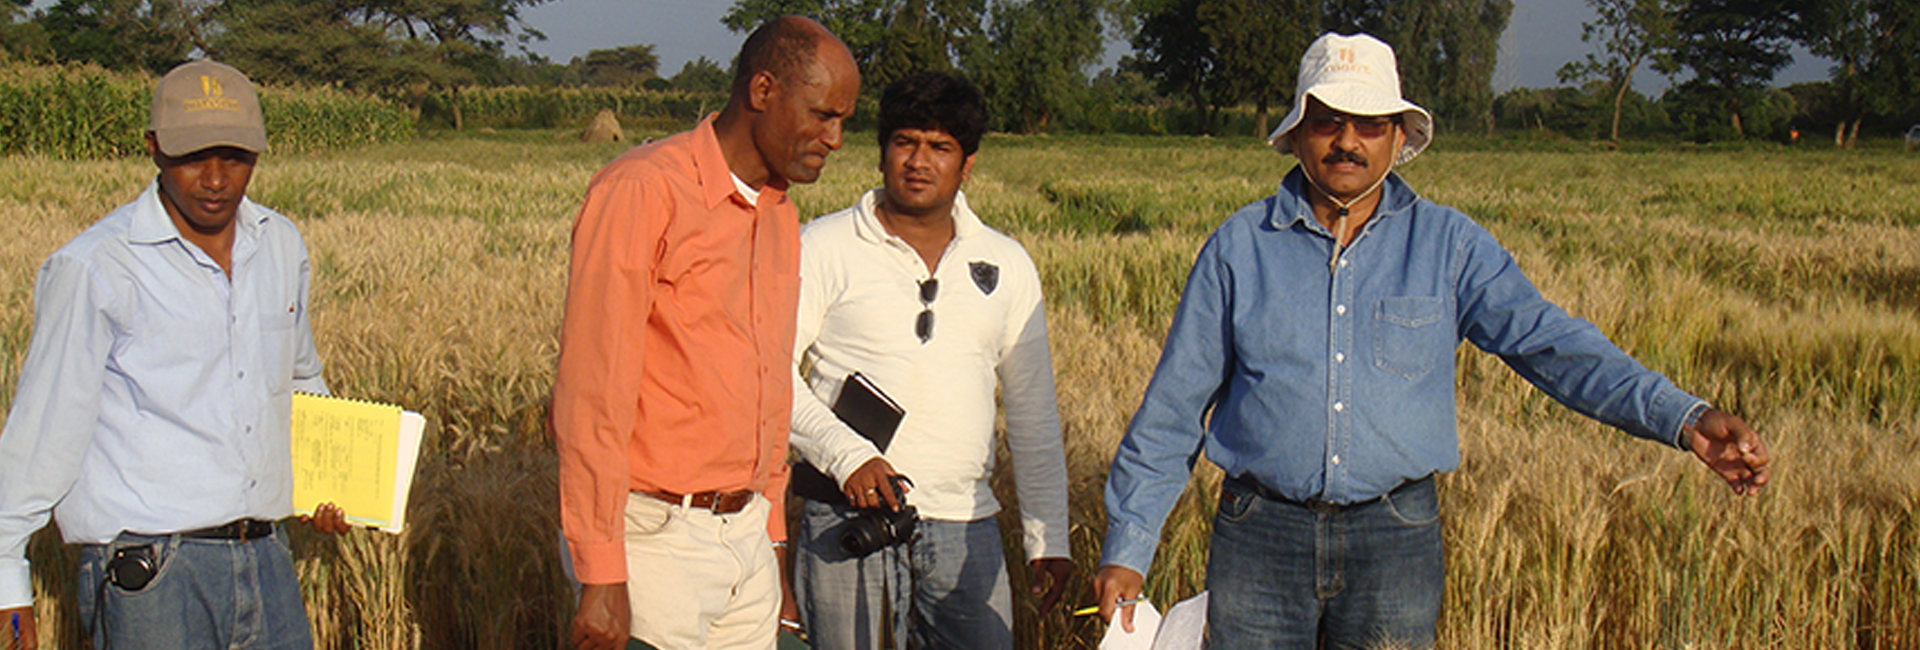 प्रवासी भारतीय सम्मान विजेता वैज्ञानिक डॉ. रवि सिंह सबके लिए खाद्य सुरक्षा की दिशा में काम कर रहे हैं